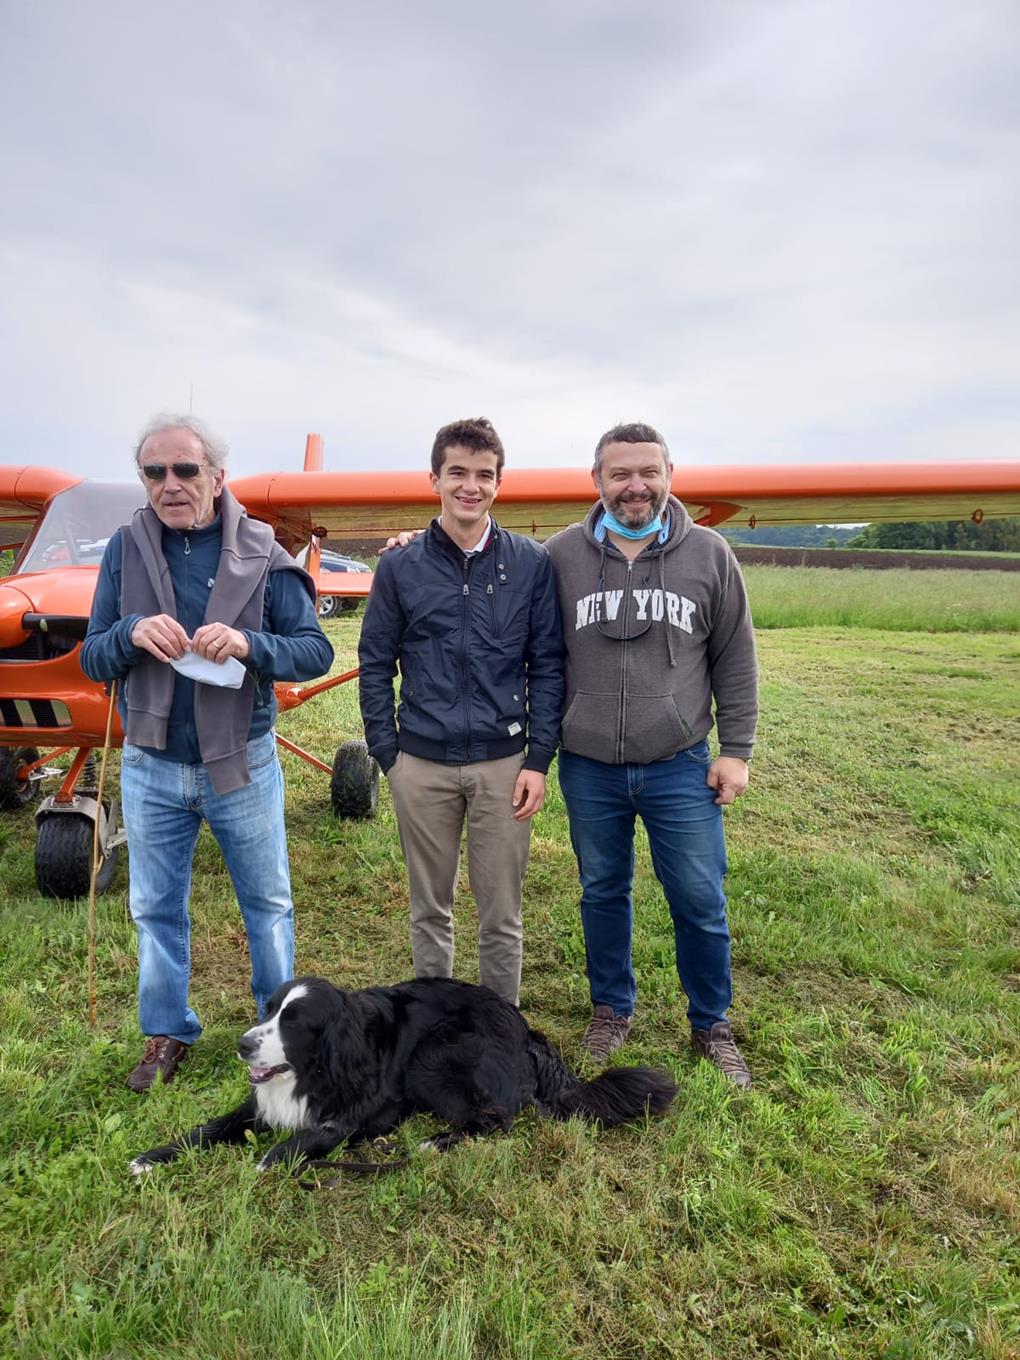 Devant l'avion en fond d'image, Martial et Jean-Claude posent avec Thomas ; grands sourires et accolades, le chien de Thomas à leurs pieds